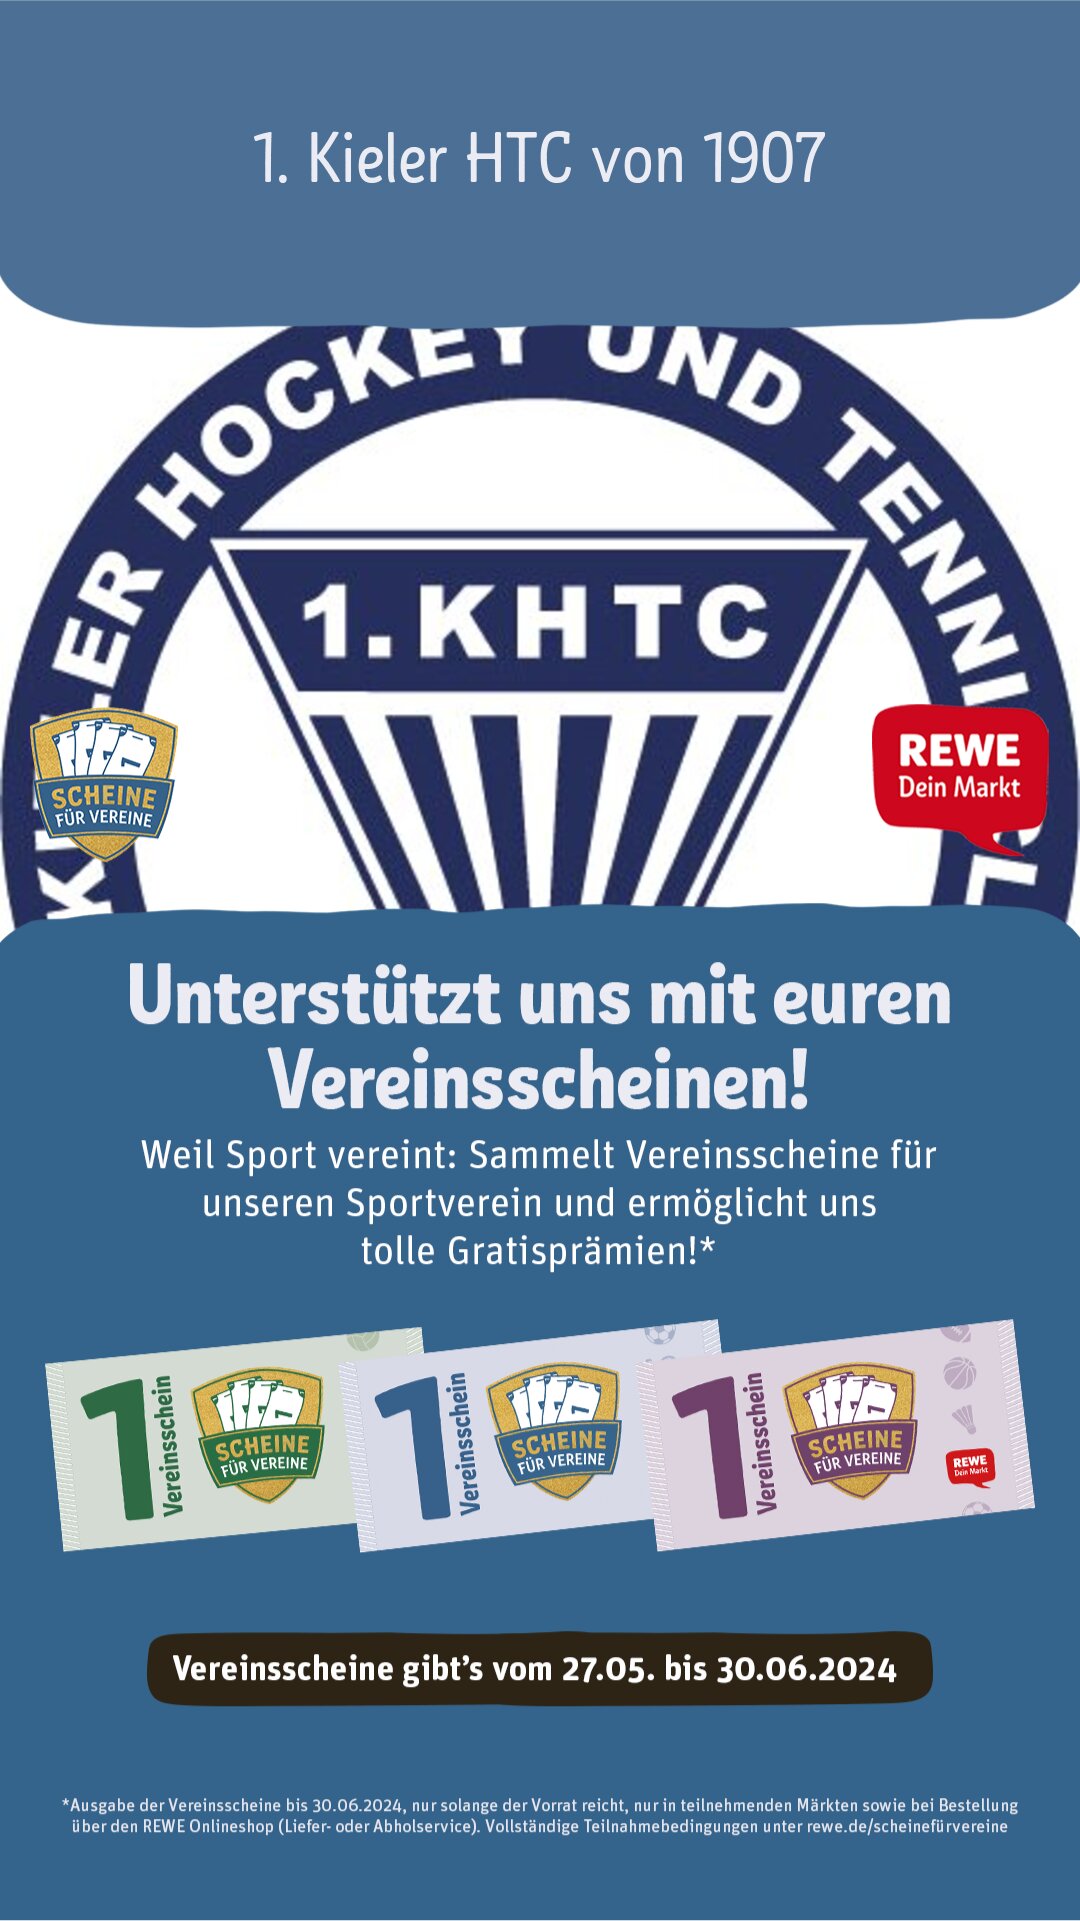 REWE Scheine für Vereine | 1. Kieler HTC von 1907 e.V.